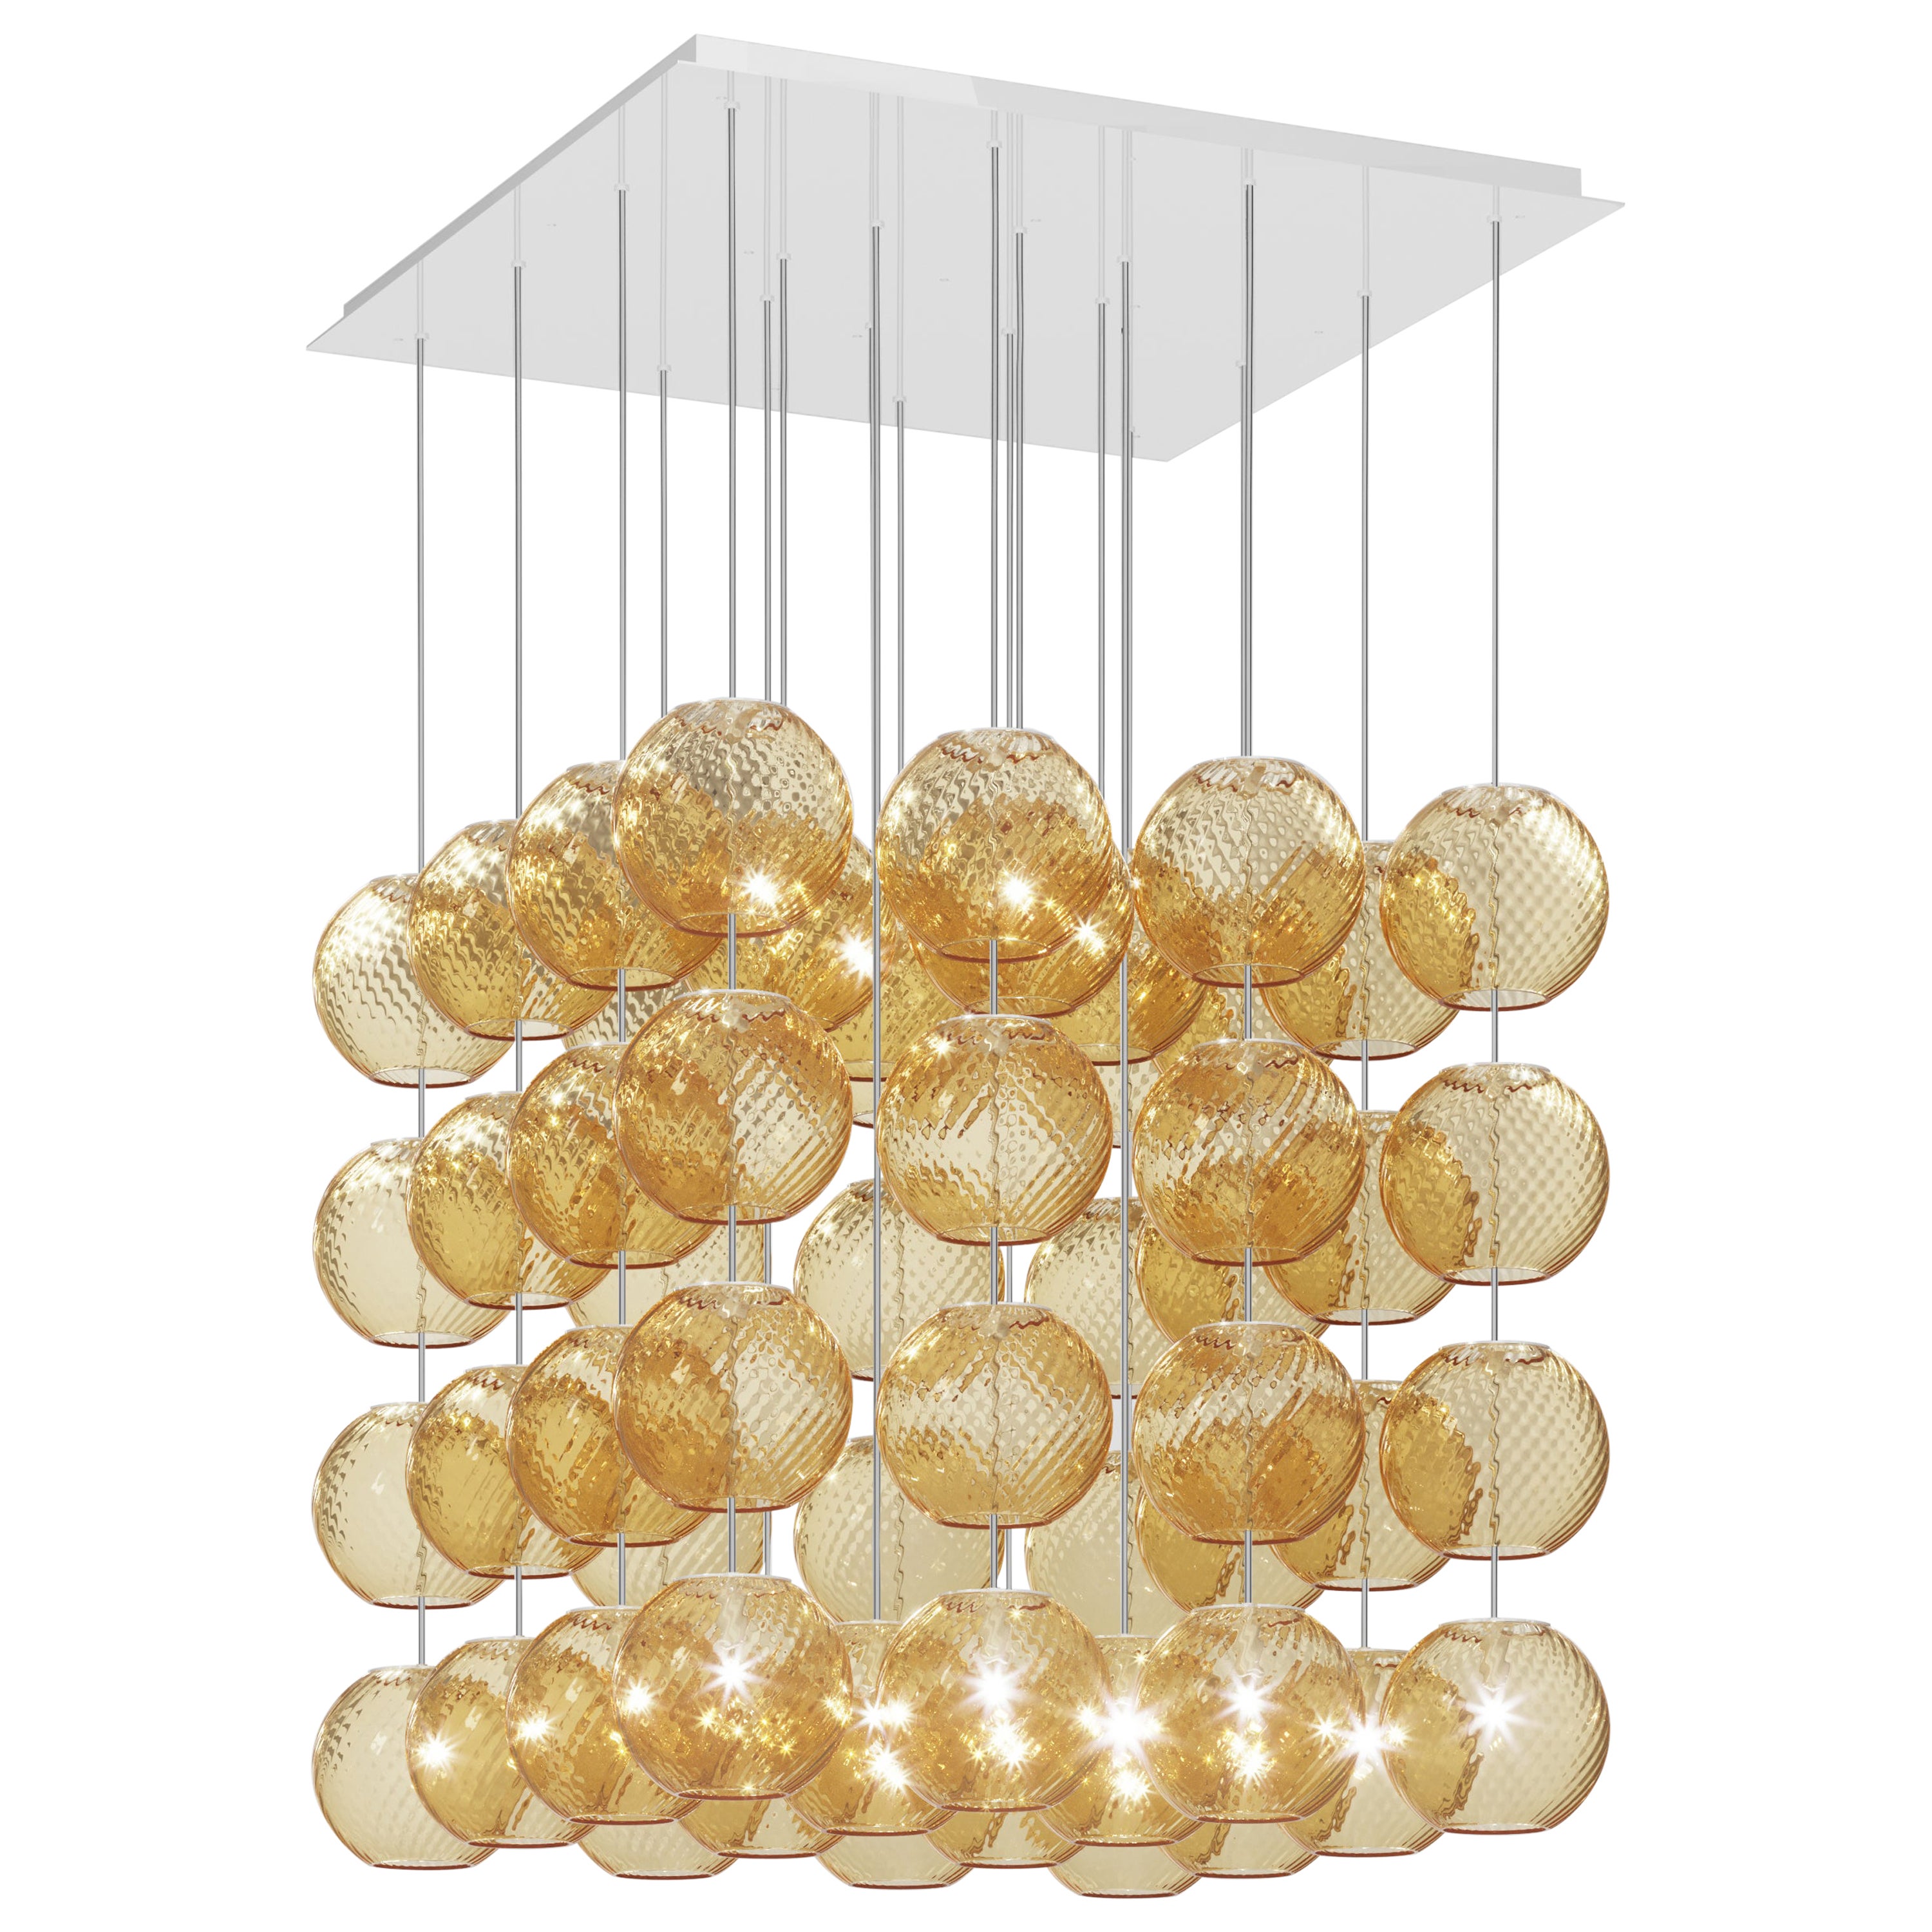 Vistosi-Pendelleuchte aus bernsteinfarben gestreiftem Glas und glänzendem weißem Rahmen